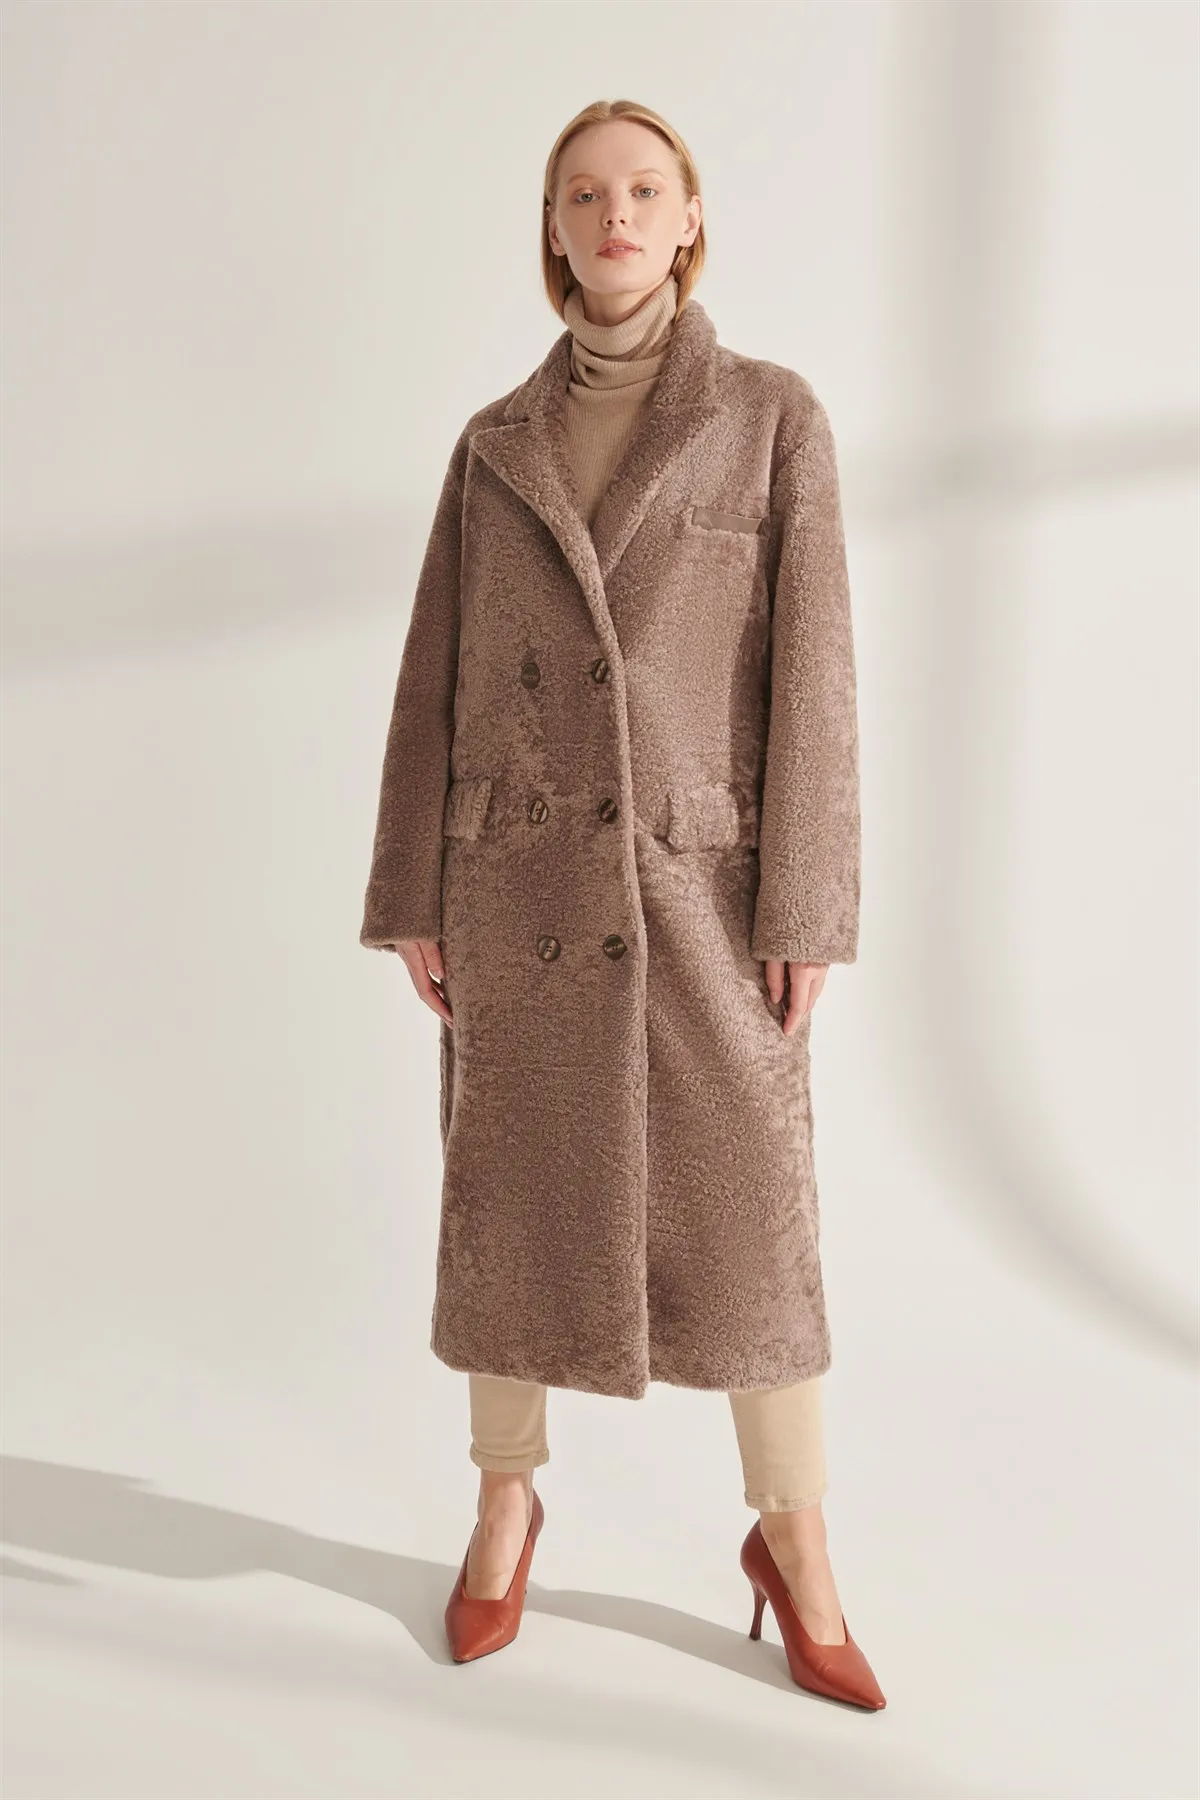 Genuine Fur Jackets Women Gray Color Kışlık Overcoats Warm Water Rüzgaz Proof Real Sheepskin Turkiyede Produced